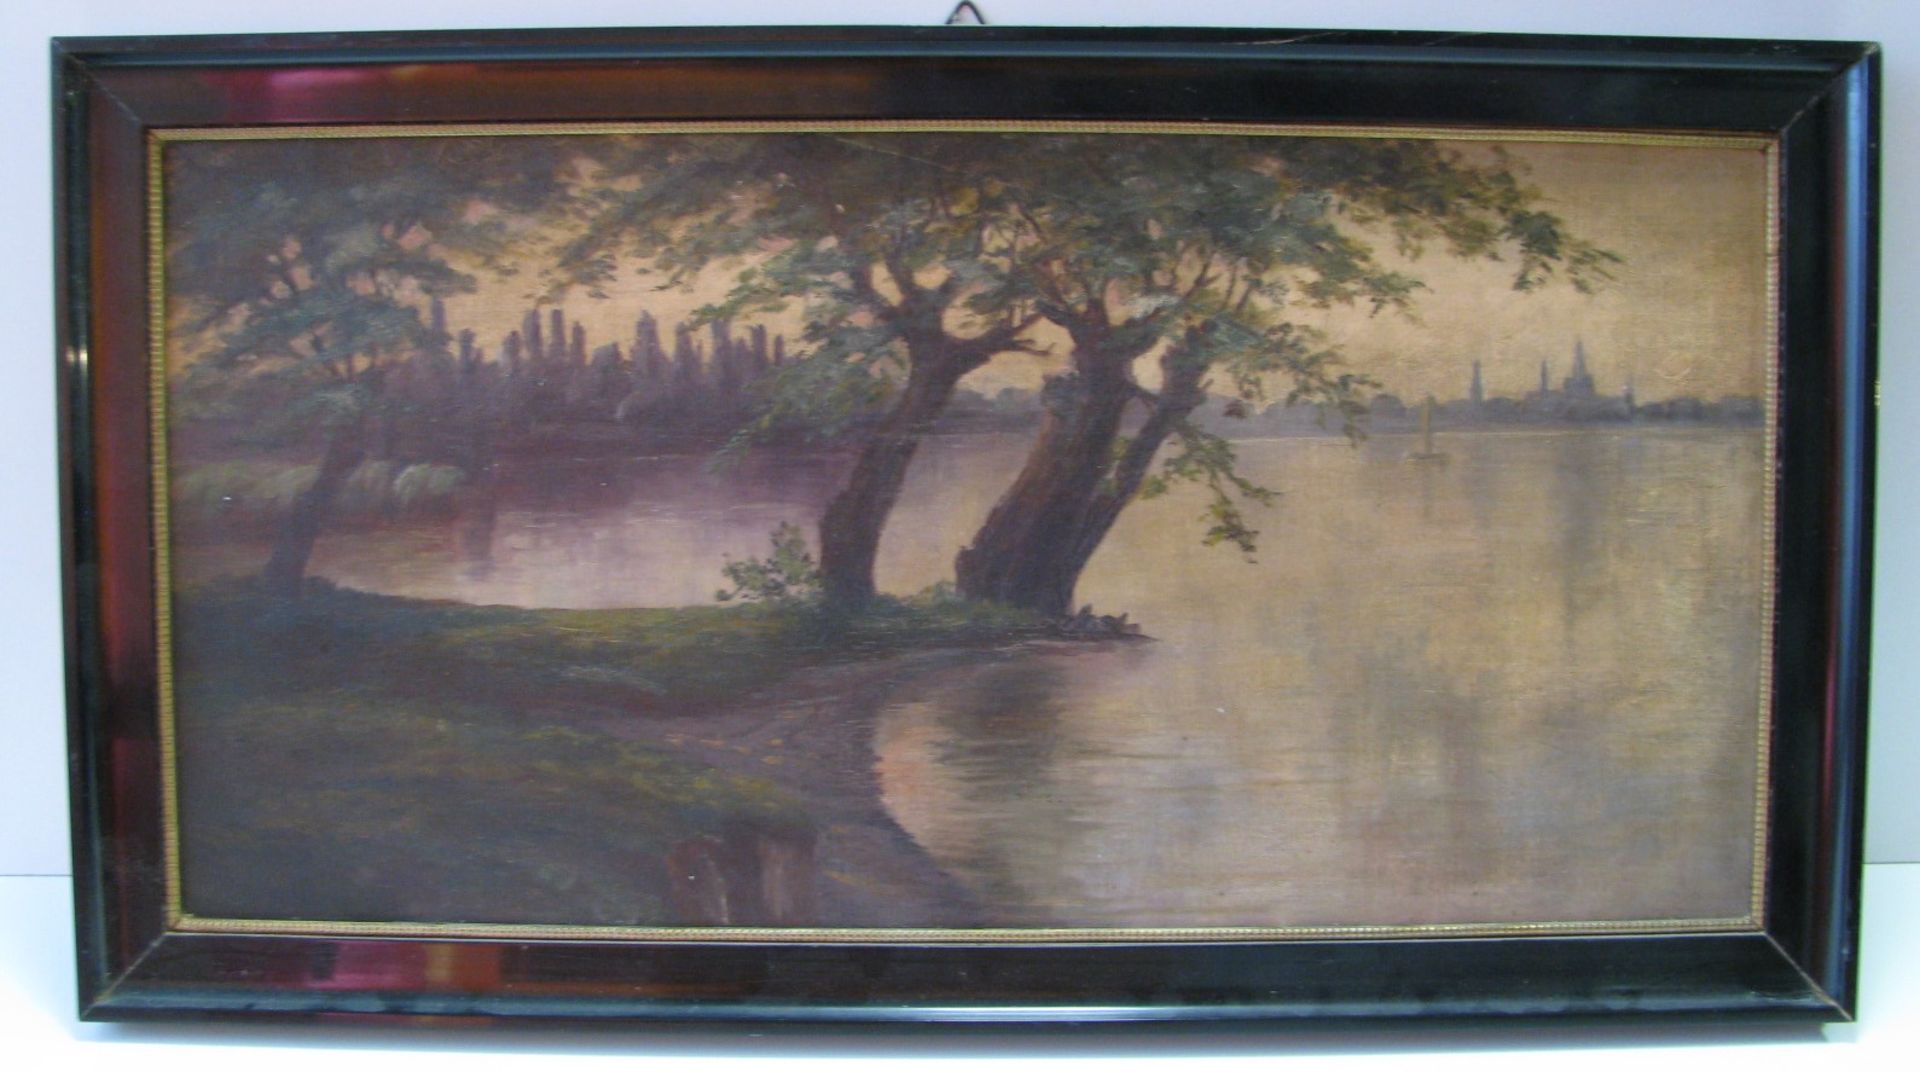 Unbekannt, um 1900, "Blick auf Konstanz am Bodensee", Öl/Leinwand, 32 x 64 cm, R.